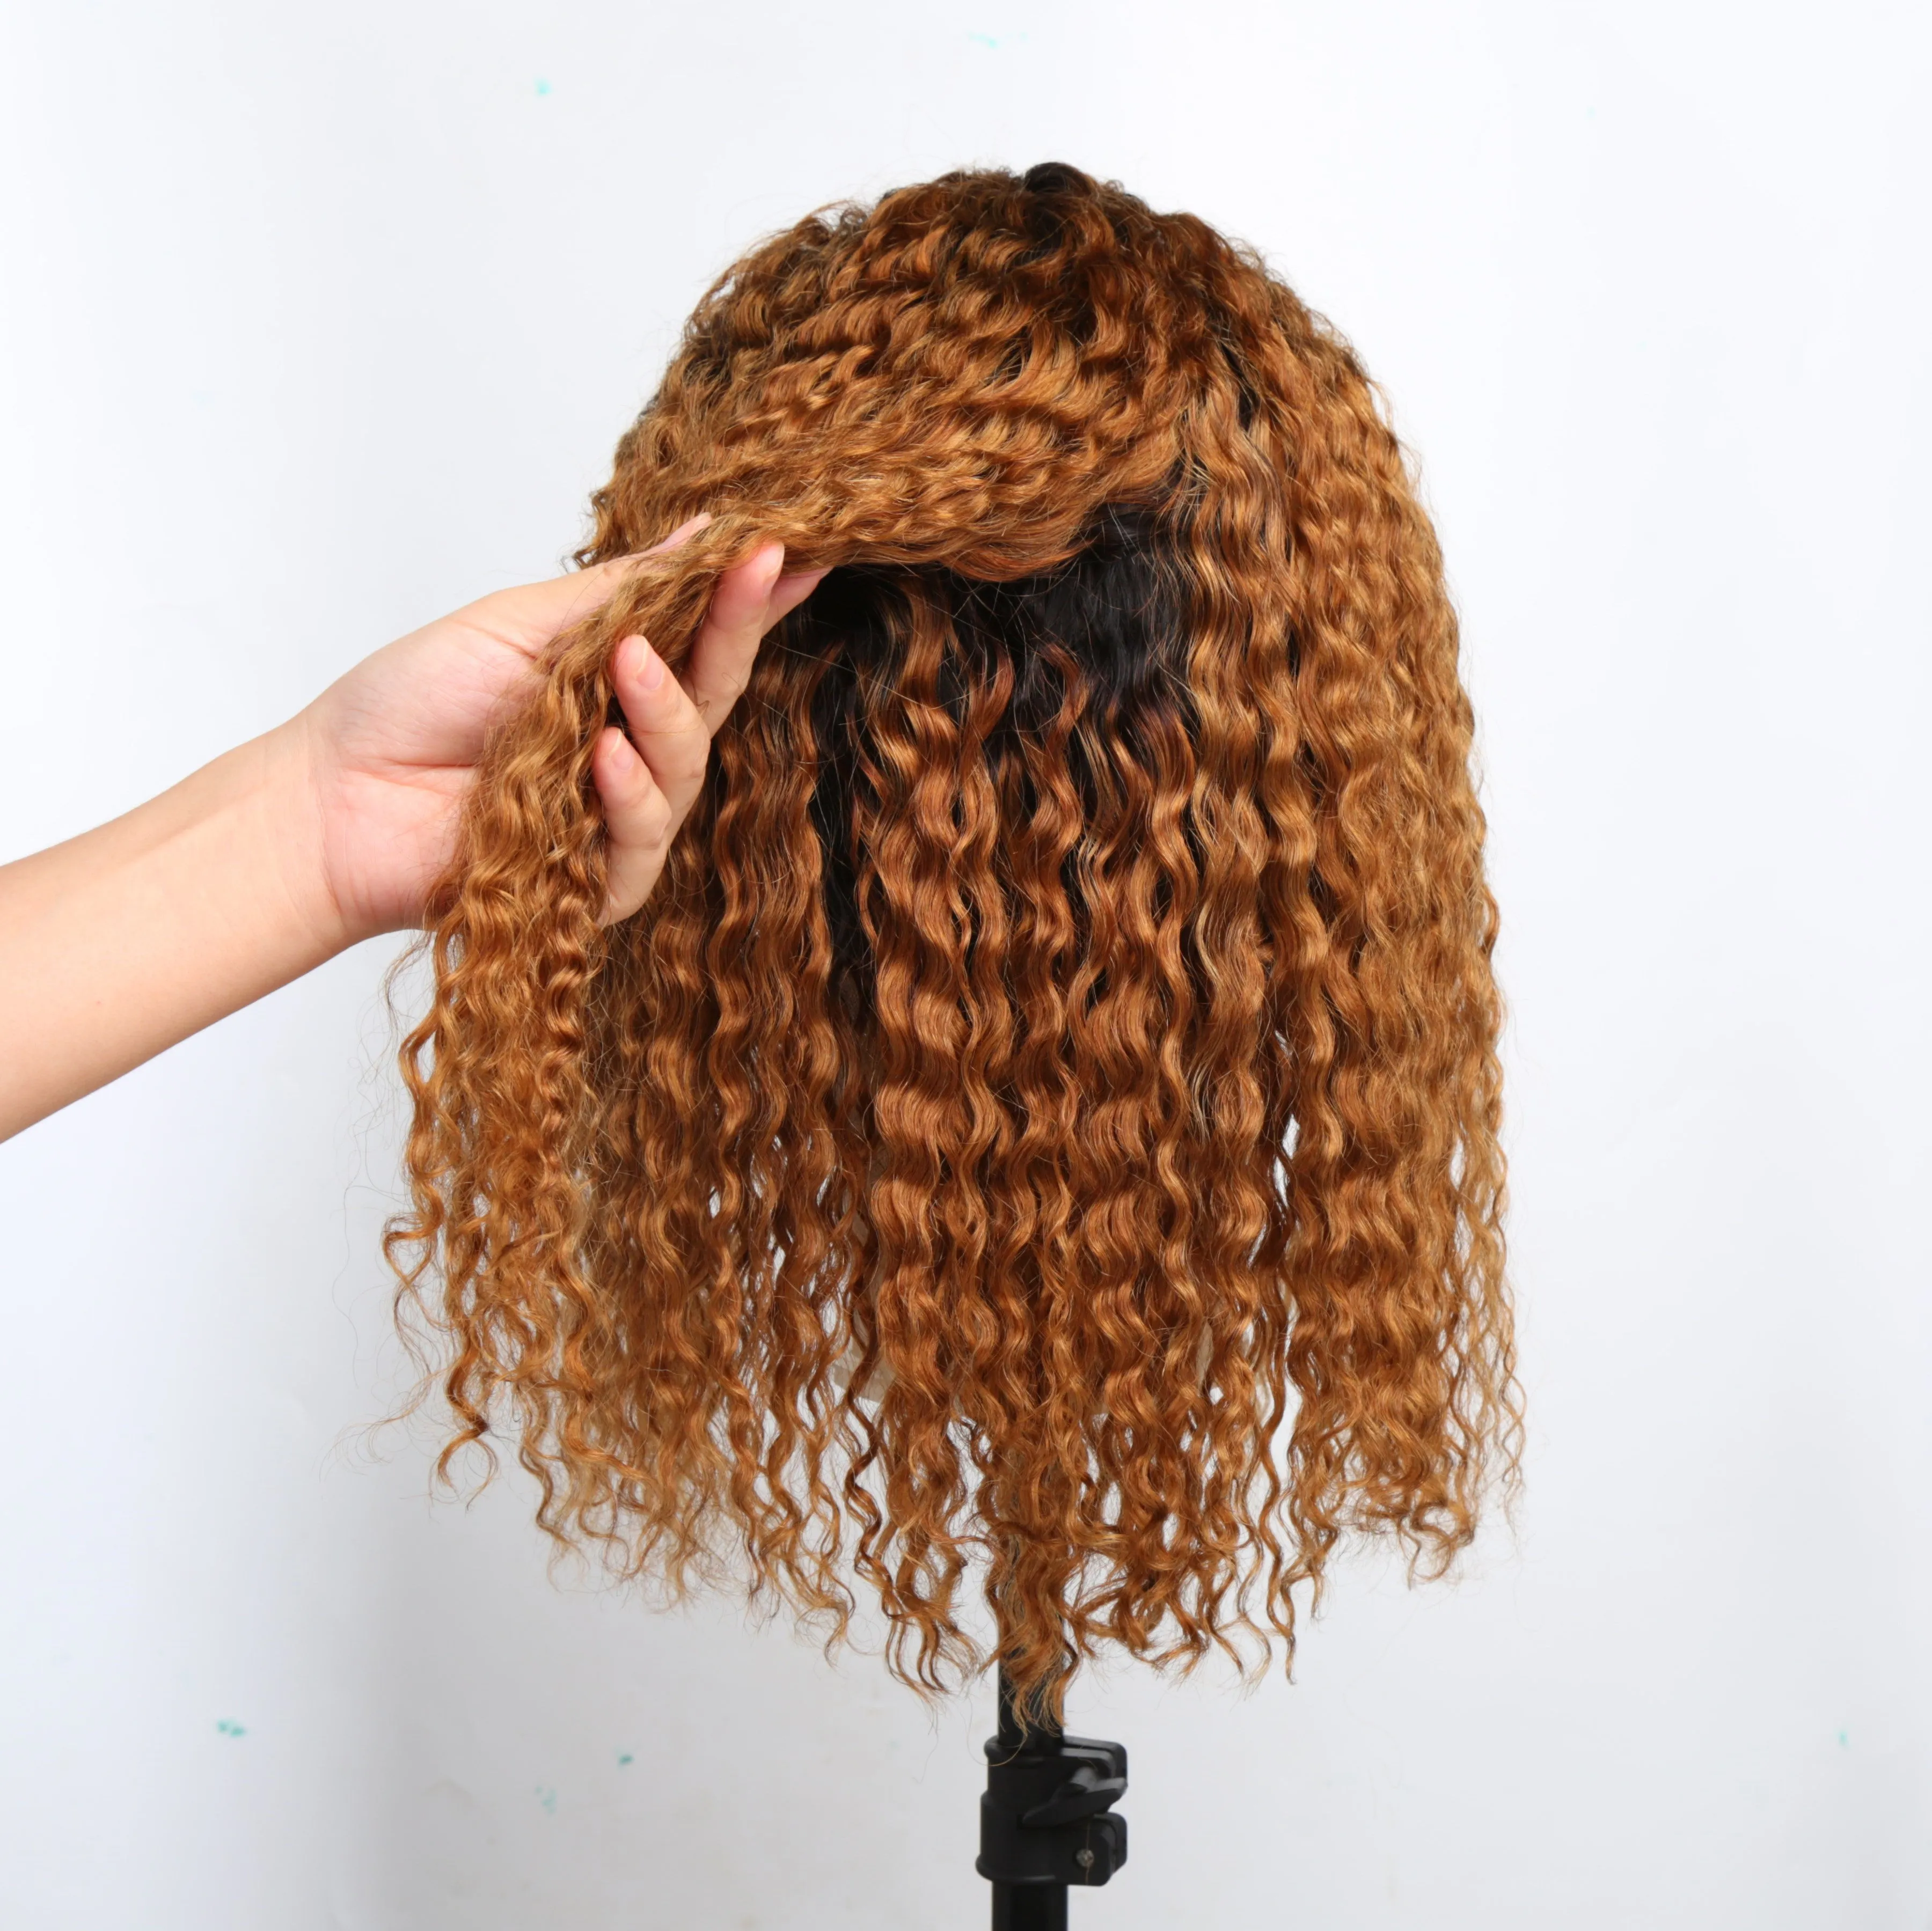 Parrucche capelli umani anteriori in pizzo colorato Ombre Parrucche capelli corti brasiliani marroni ricci a pizzico Donne nere Hightlight1744961